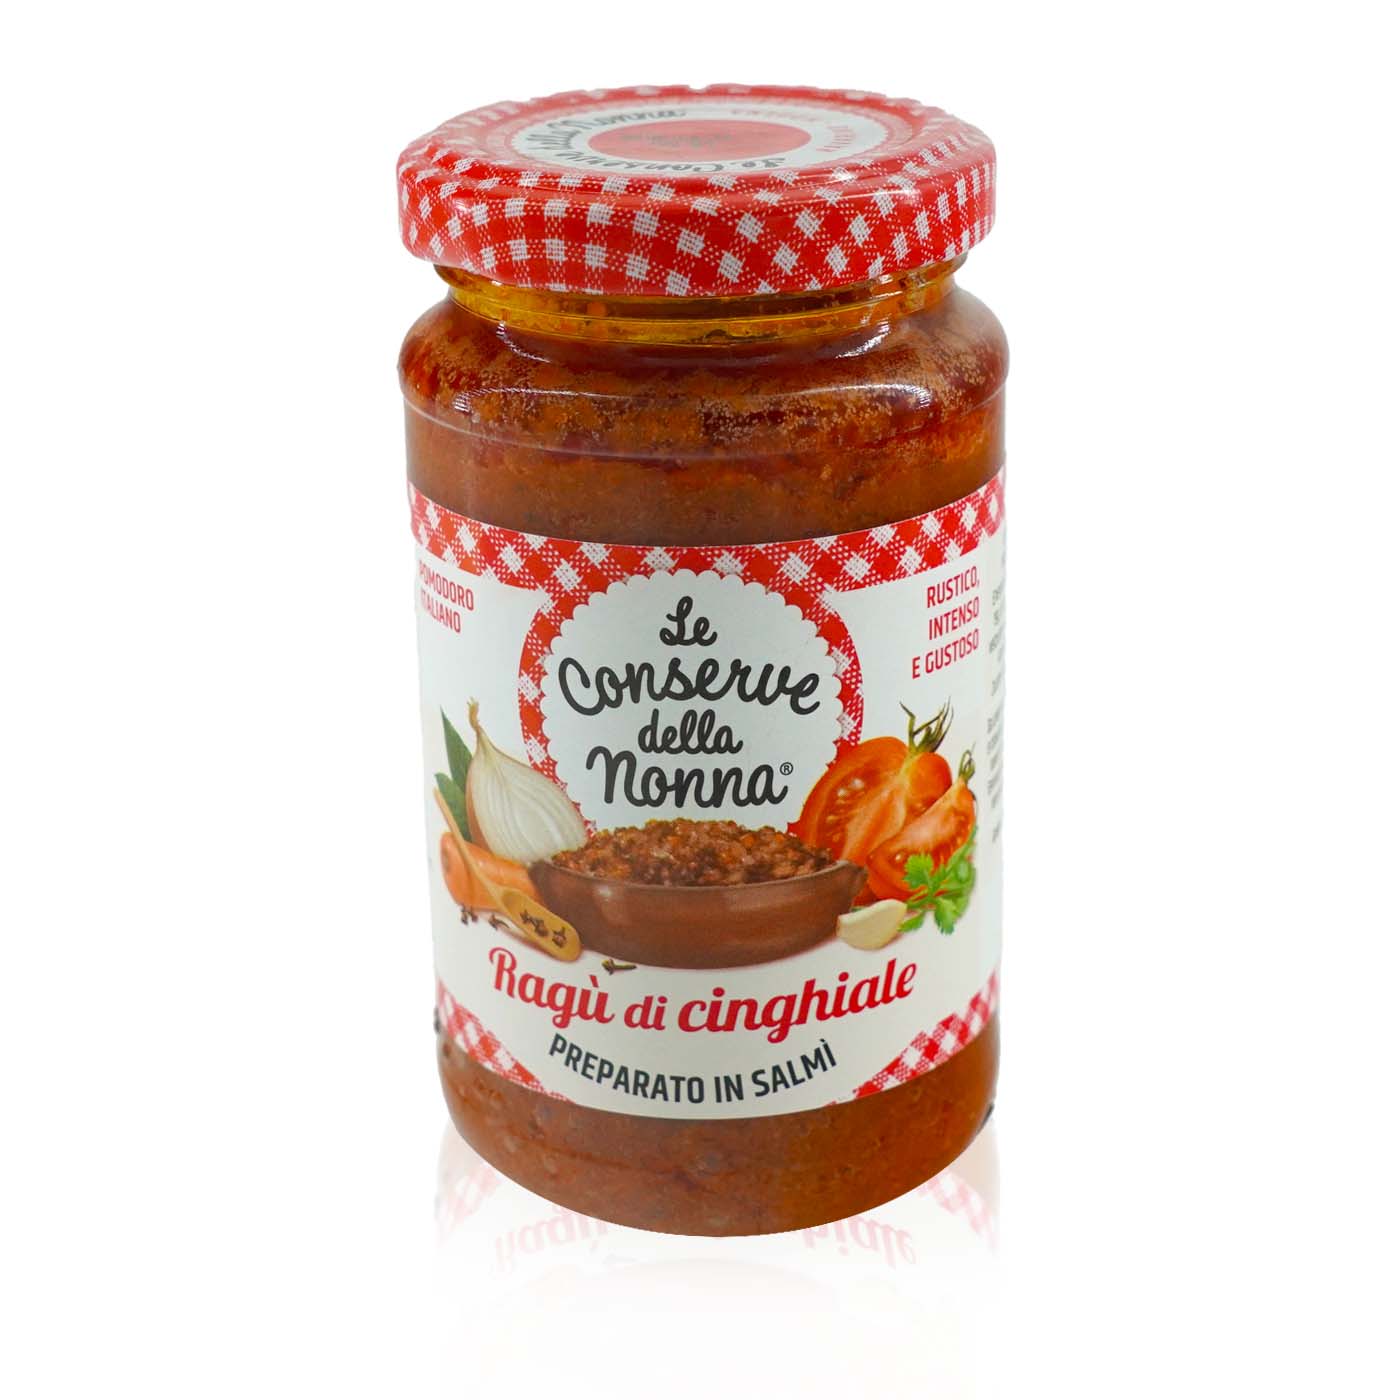 LE CONSERVE DELLA NONNA Ragù di cinghiale - Sauce auf Wildschweinfleischbasis - 0,19kg - italienisch - einkaufen.de